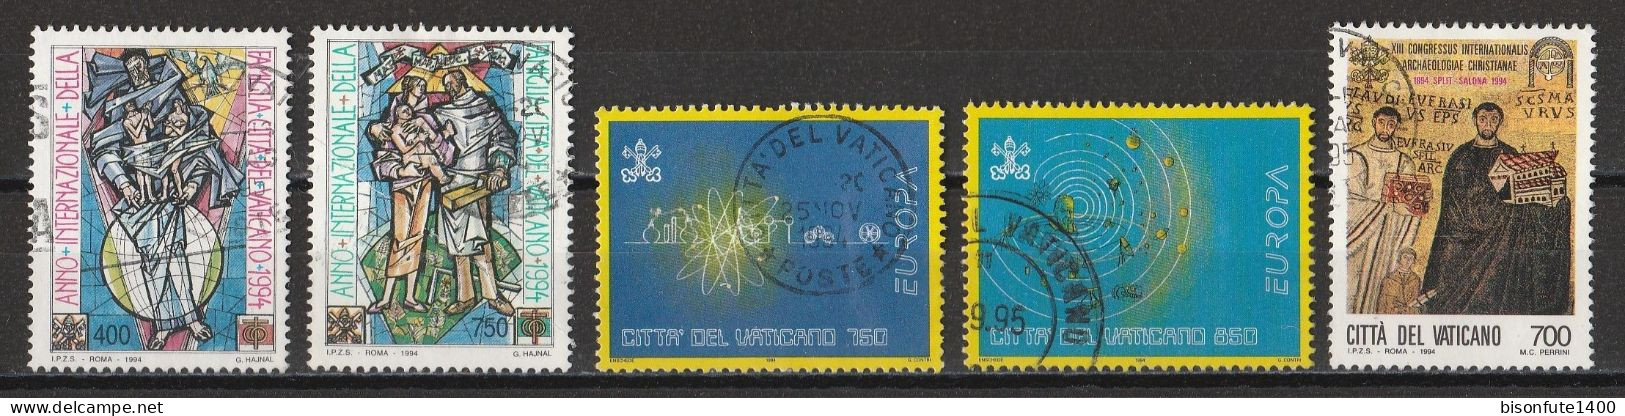 Vatican 1994 : Timbres Yvert & Tellier N° 980 - 981 - 984 - 985 - 987 - 991 - 993 - 995 - 996 Et 997 Se Tenant Et Oblit. - Usati